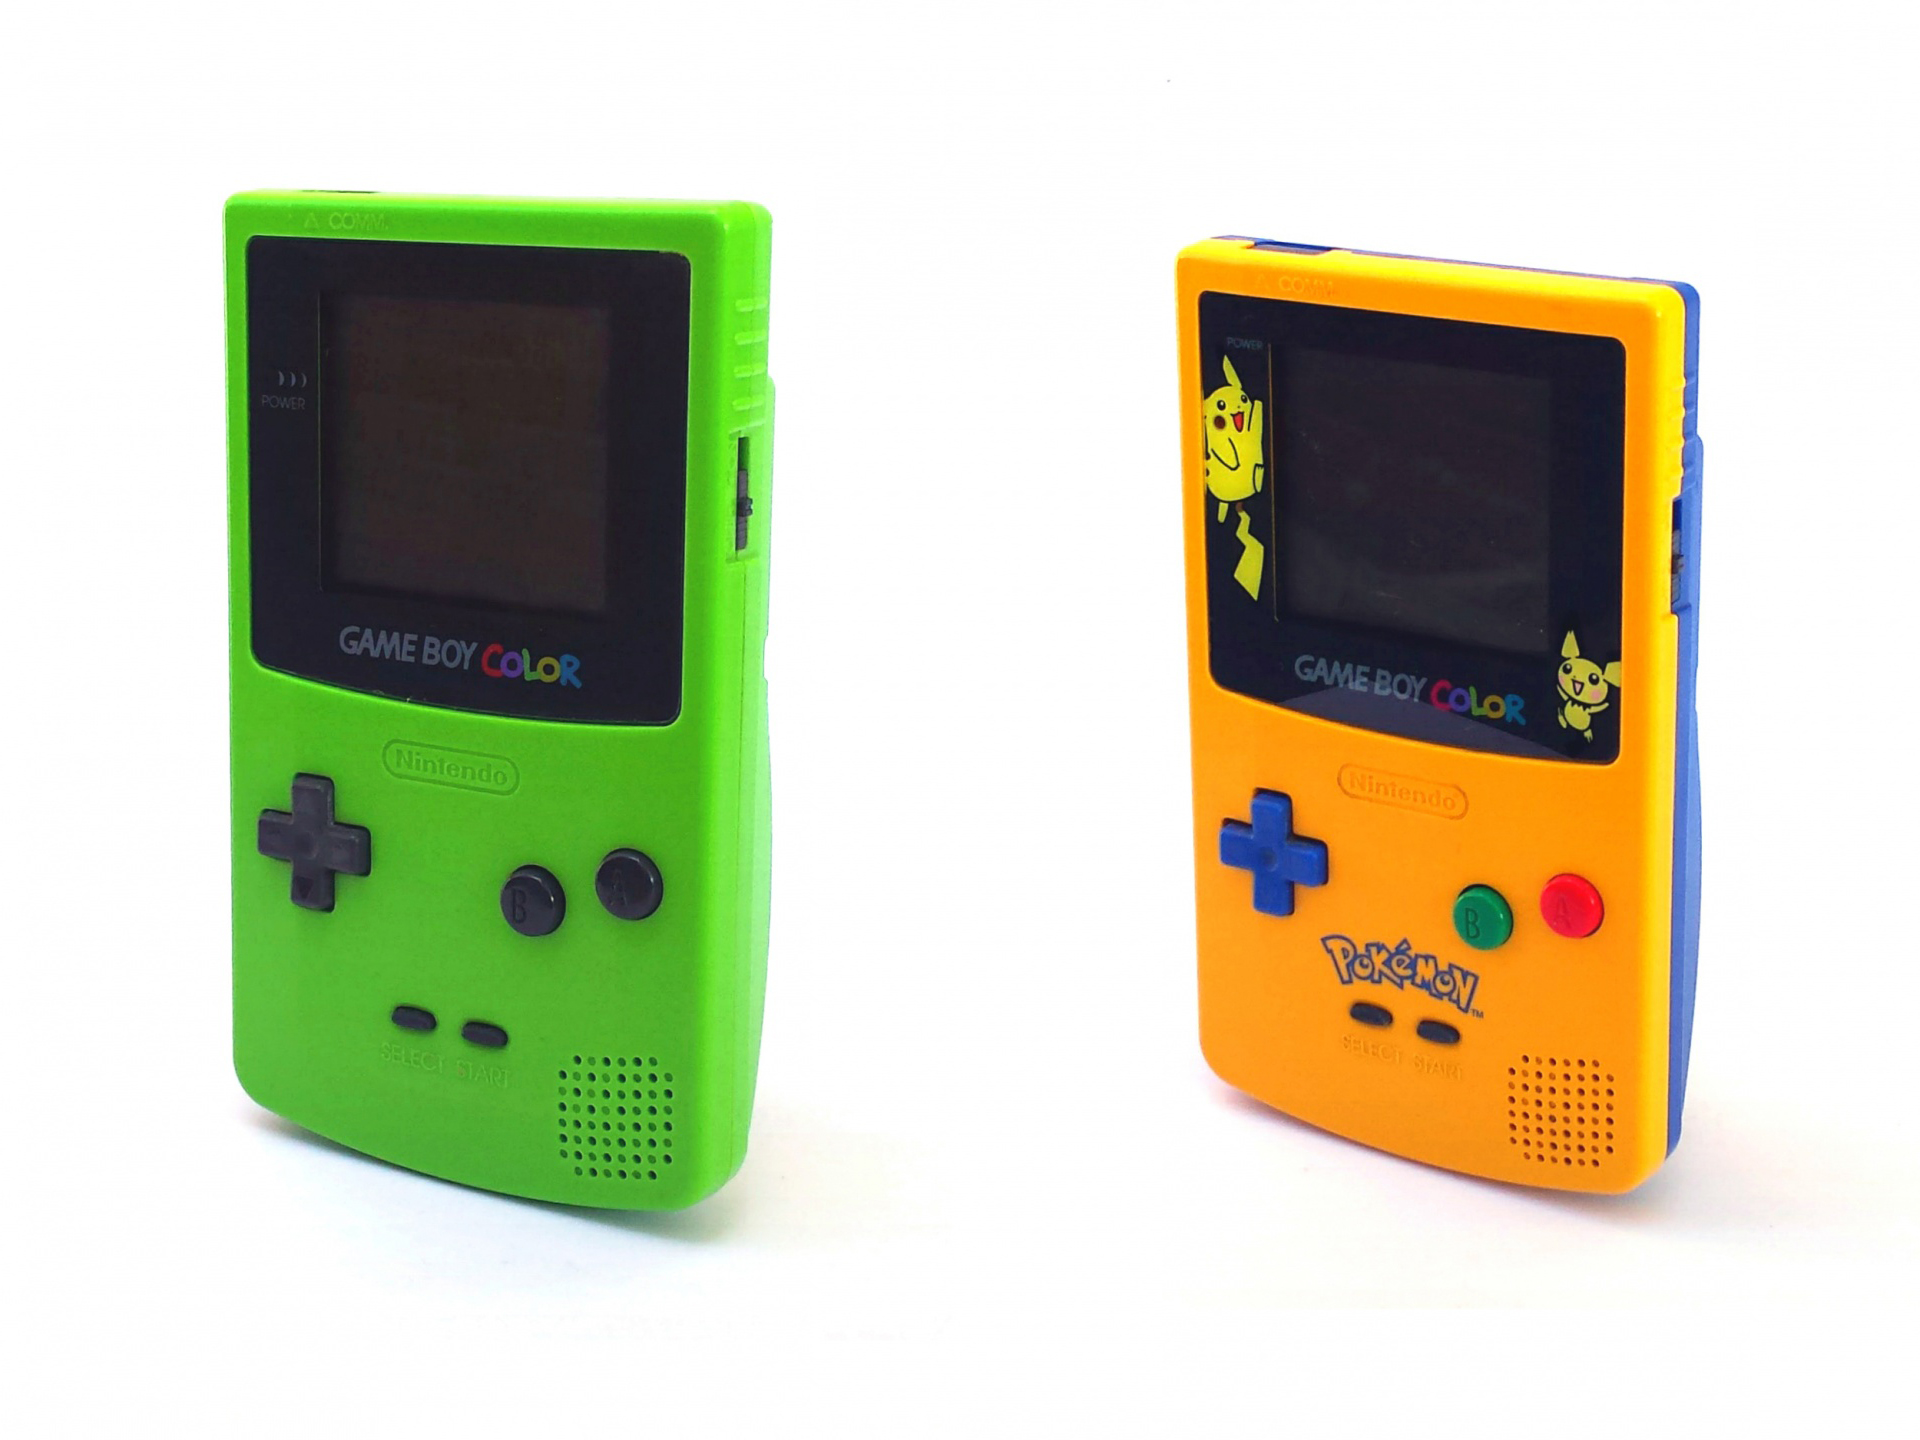 Game Boy Color, predstavljen krajem 1998. godine, bio je prvi pravi nasljednik originalnog Game Boya. Kako samo ime implicira, glavna novost je ekran u boji, koji je mogao prikazivati do 56 boja. Color je također bio kompatibilan sa starim Game Boyem, pa su se na njemu mogle igrati i stare igre. Premda je originalni Game Boy bio tržišni hit koji je dominirao gotovo deset godina, Color je izdržao samo tri godine. U te tri godine, imali smo i neke limitirane verzije, poput one za Pokemone.